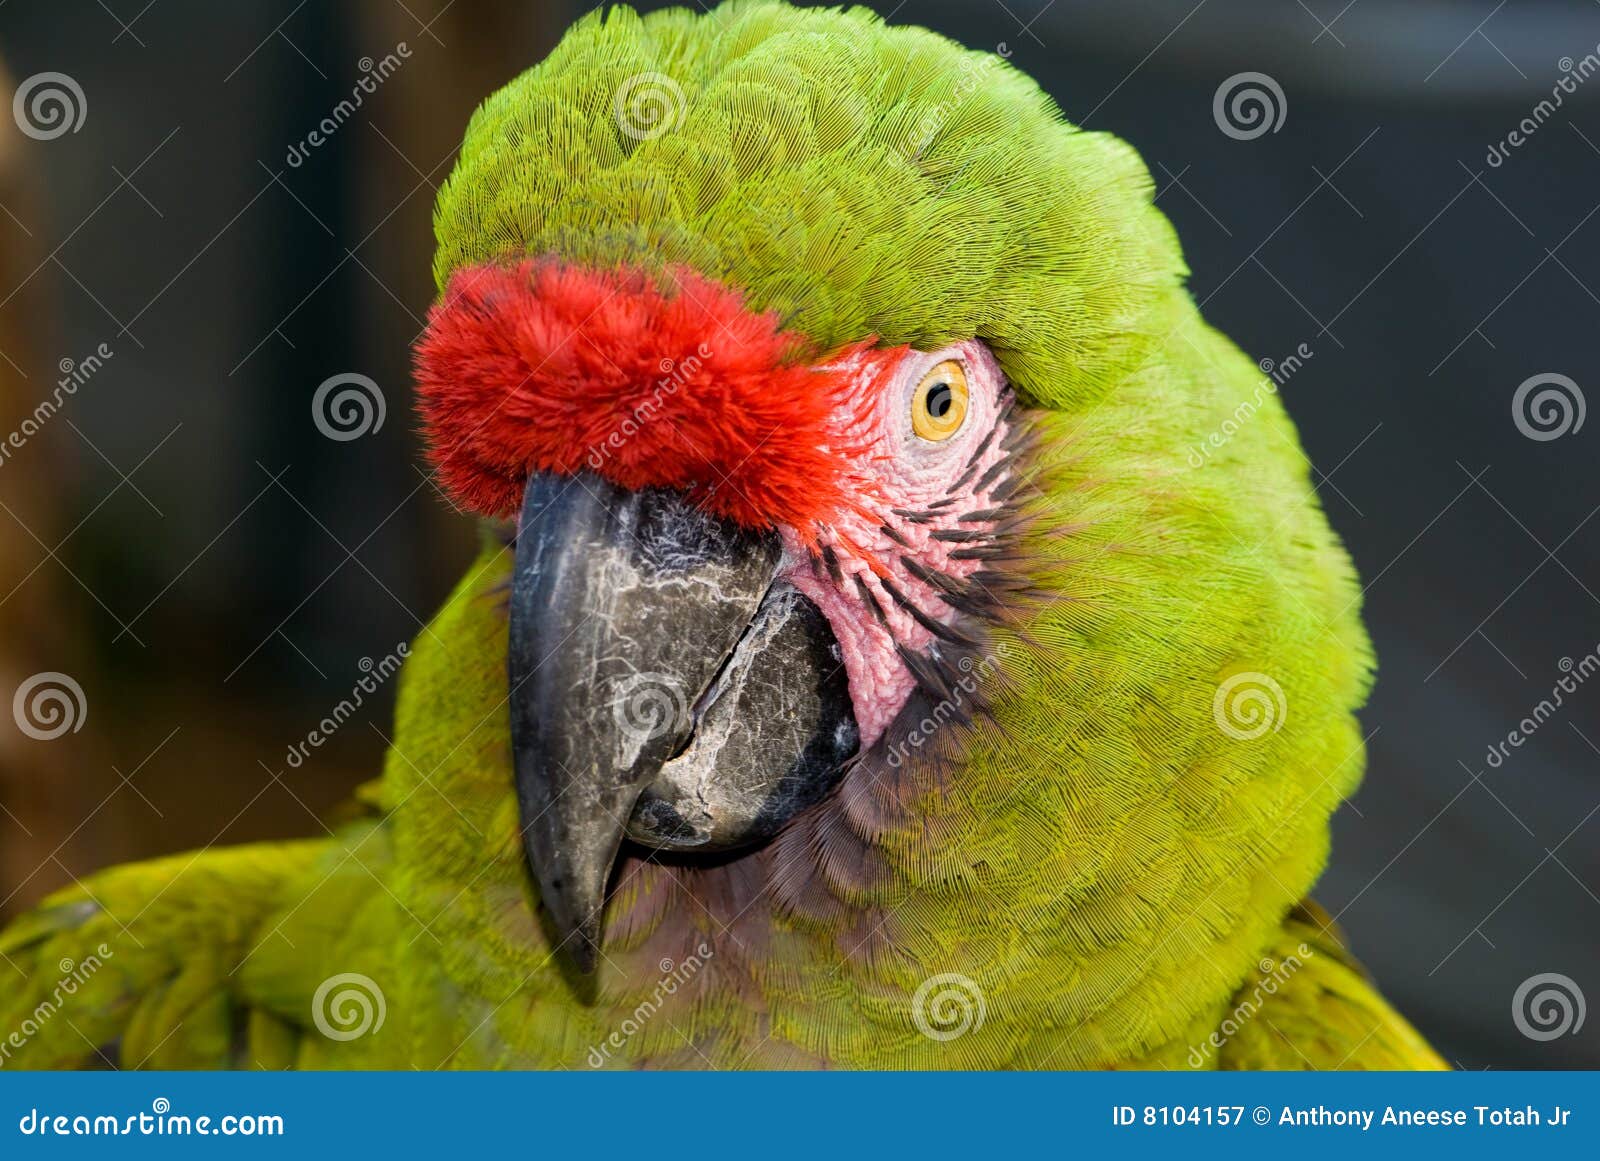 military macaw (ara militaris)